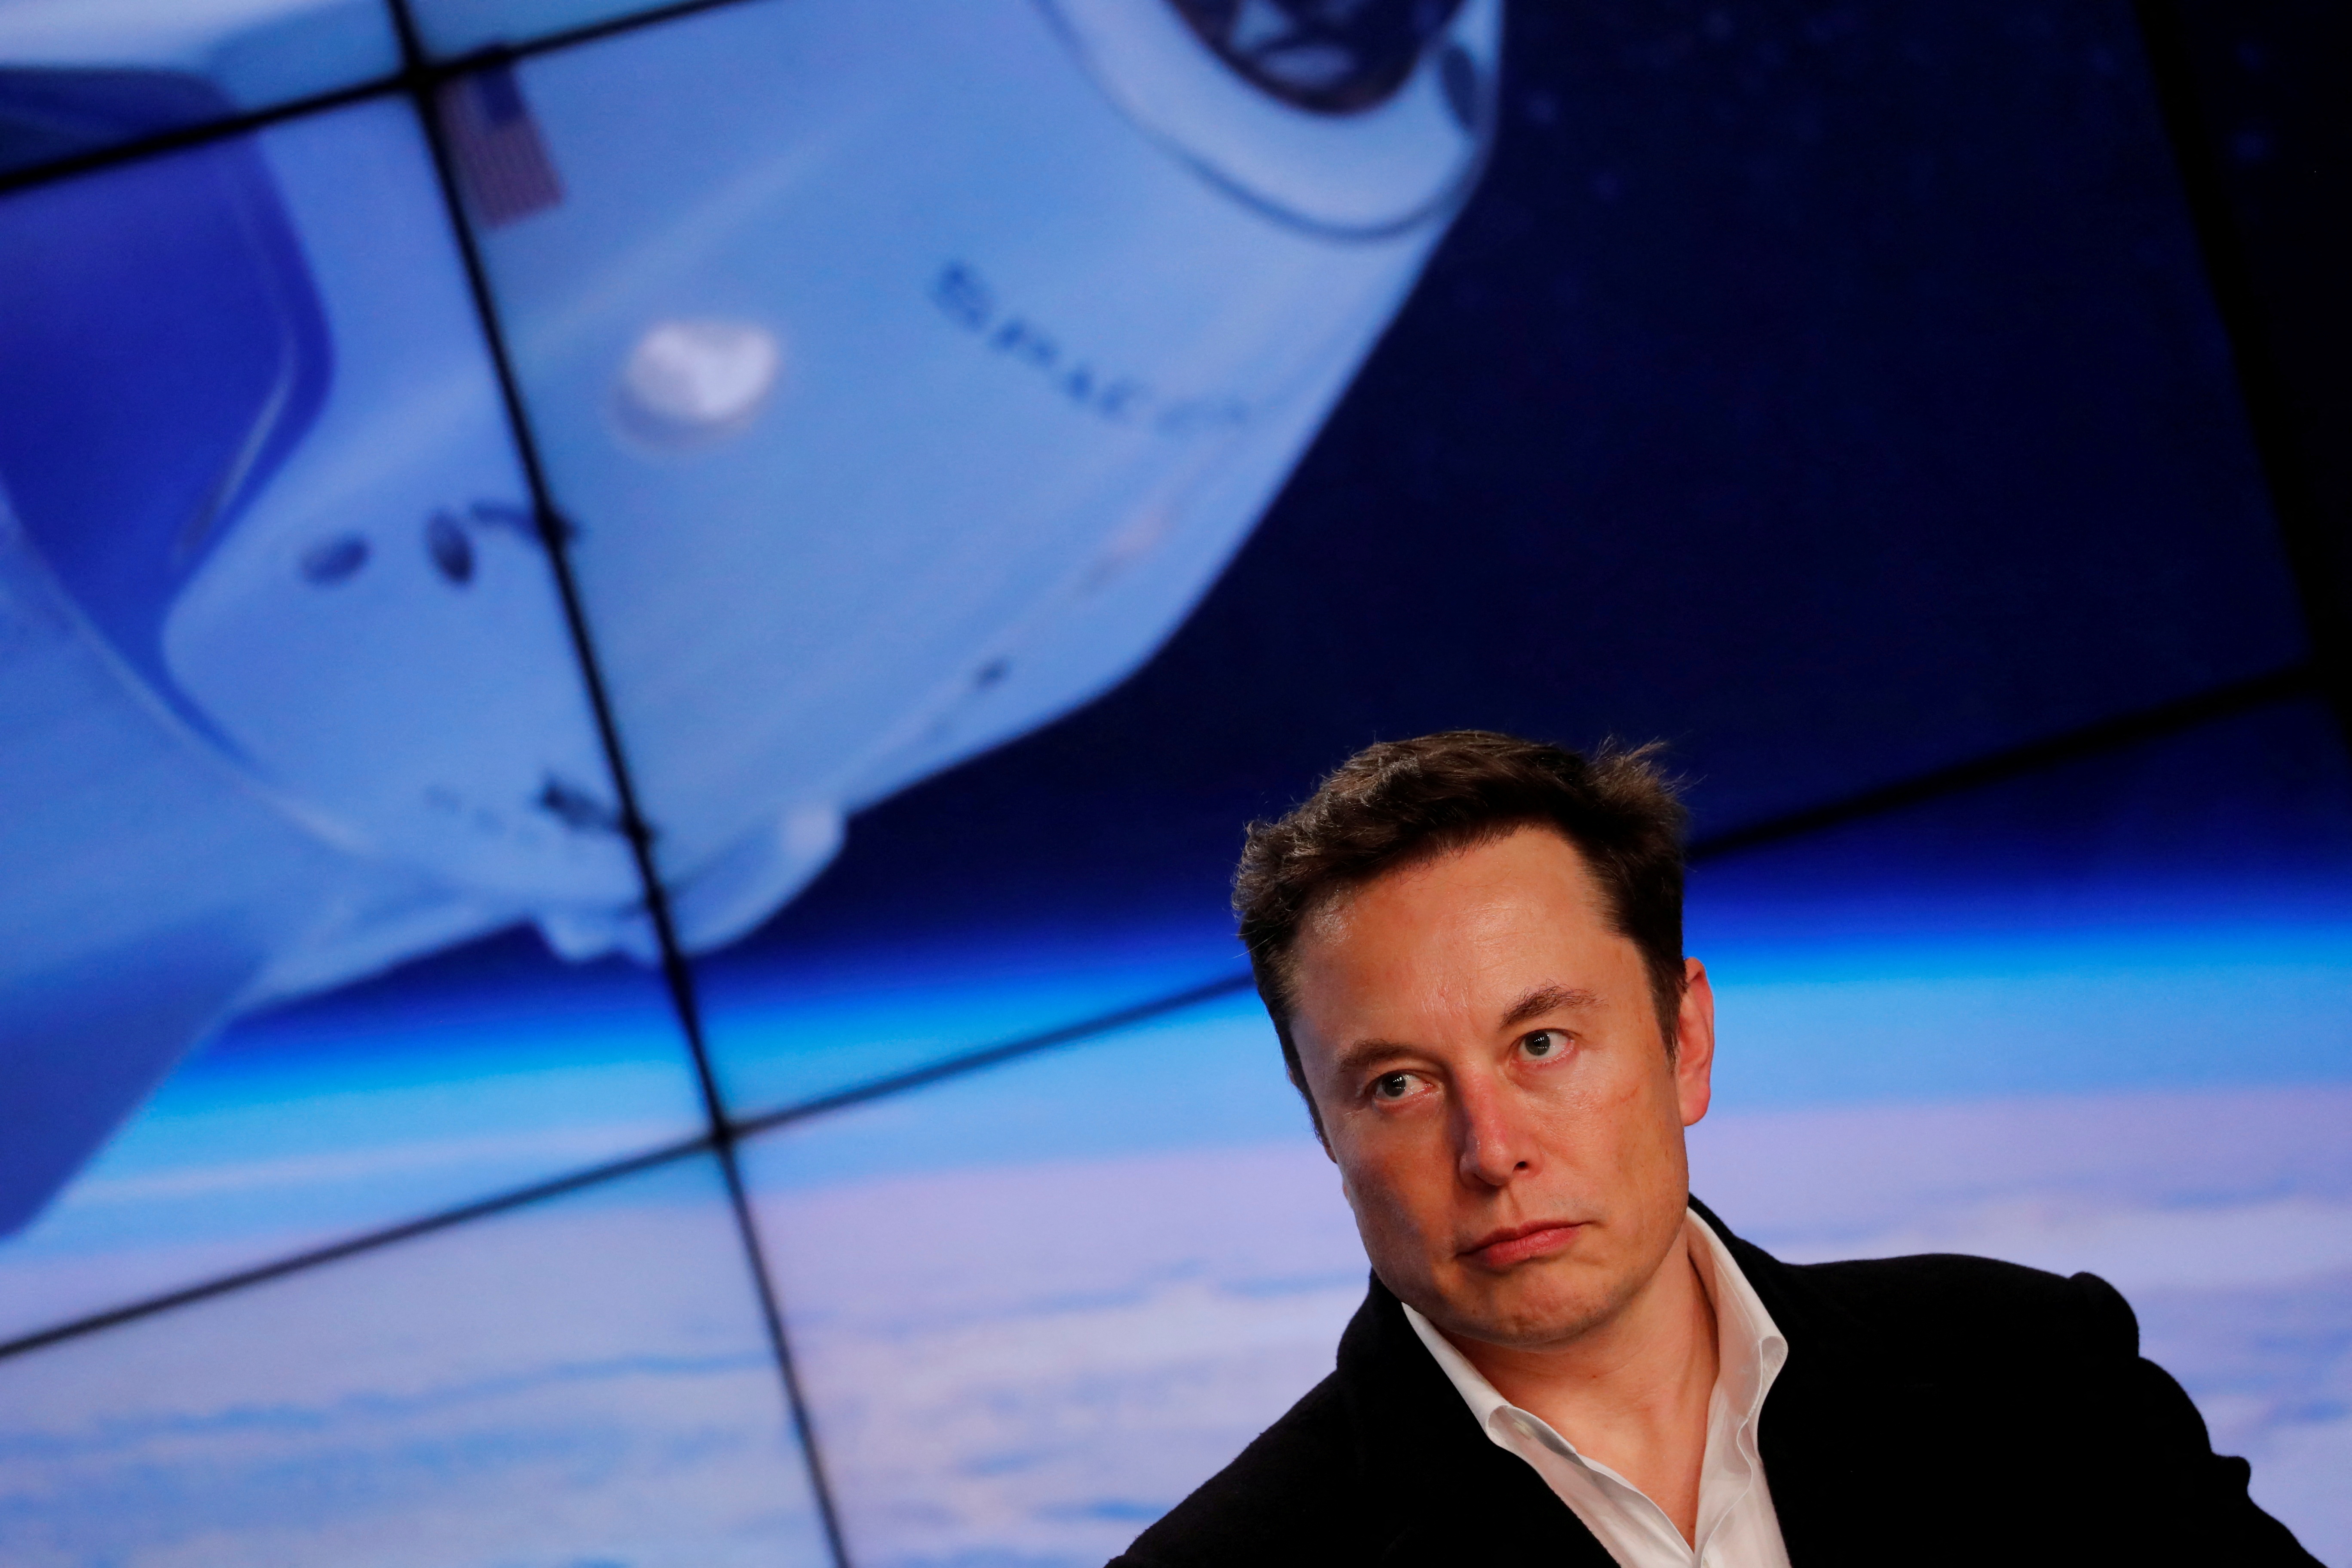 FOTO DE ARCHIVO: El fundador de SpaceX, Elon Musk, habla en una conferencia de prensa en Cabo Cañaveral, Florida, Estados Unidos, 2 de marzo de 2019. REUTERS/Mike Blake